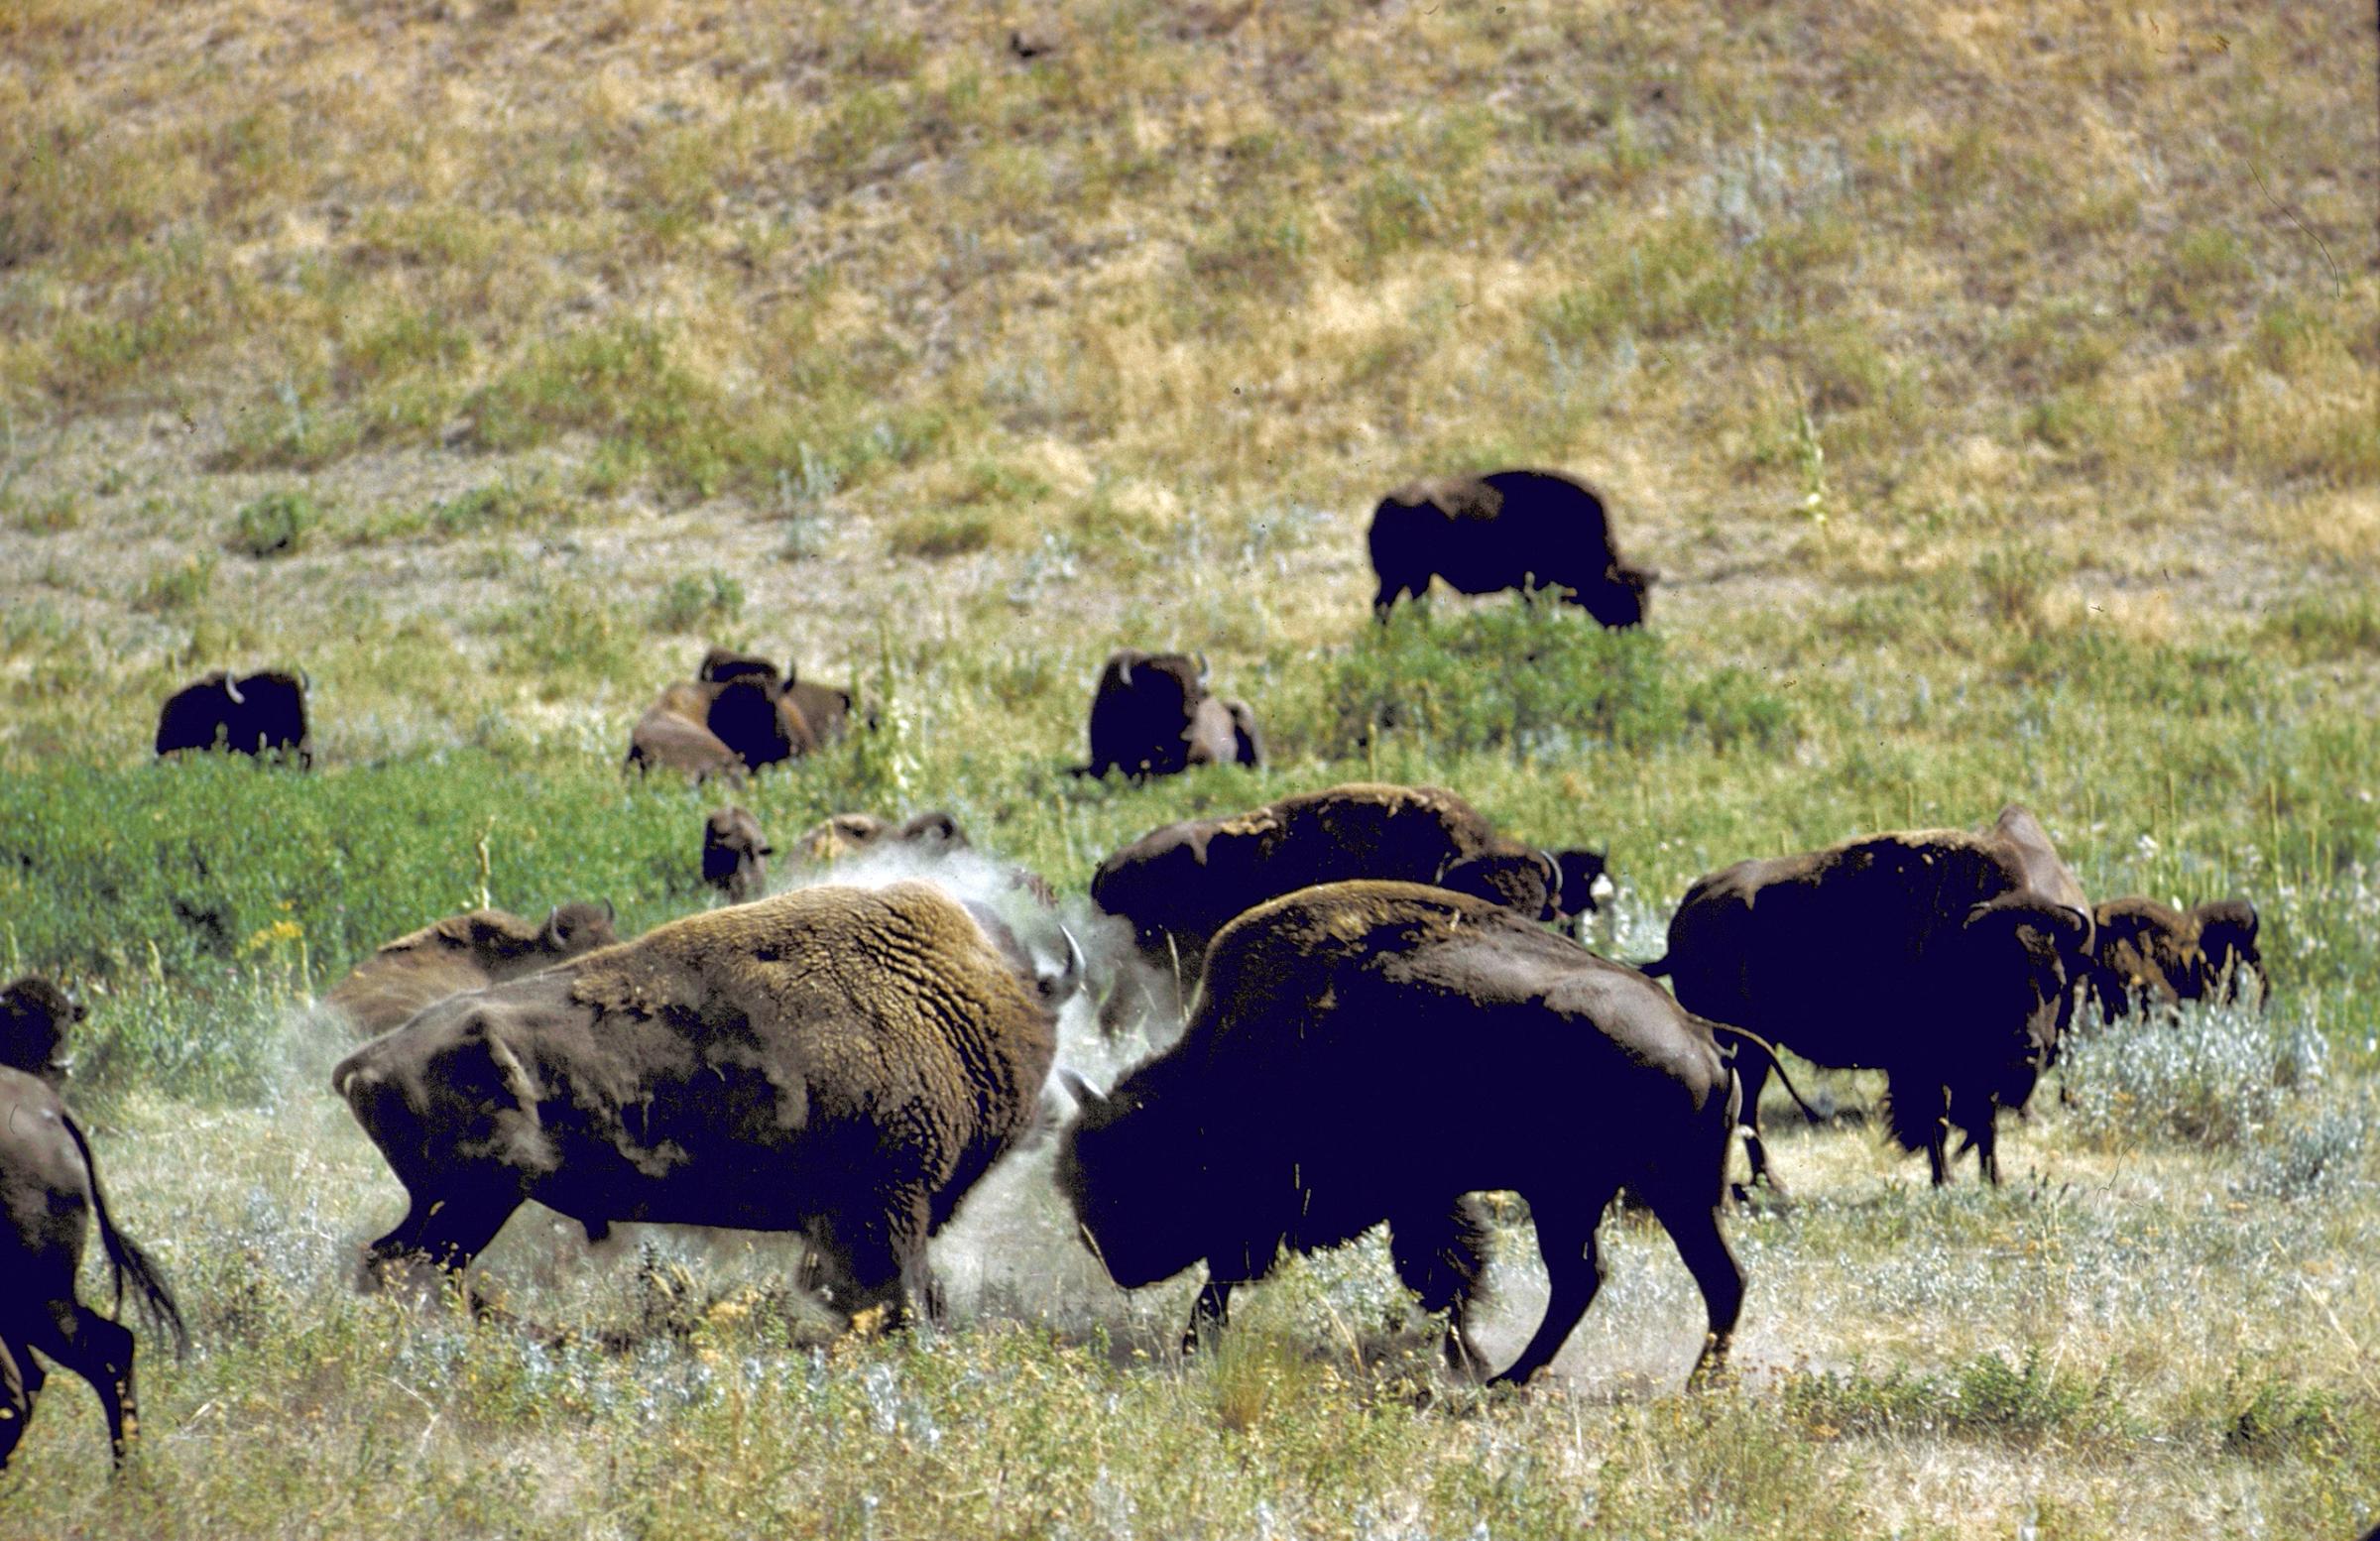 Herd of bison roaming across National Bison Range in Montana. 1961.